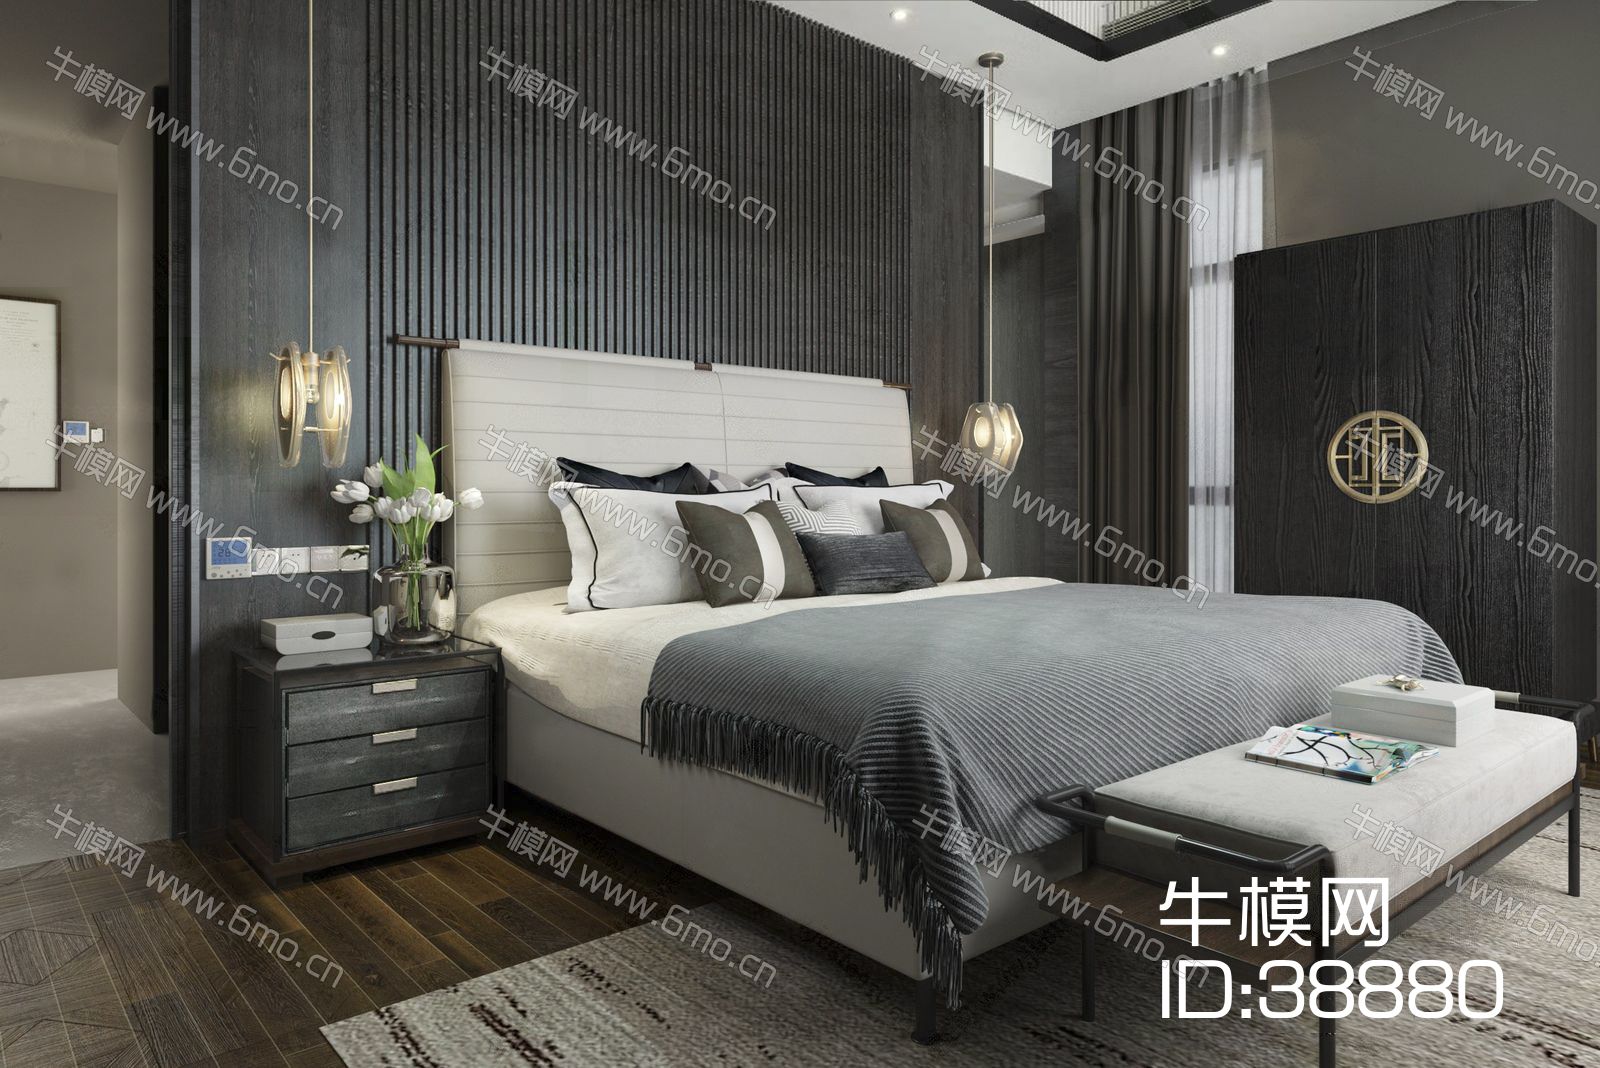 新中式卧室 床头柜 床尾凳 双人床 床 单人床